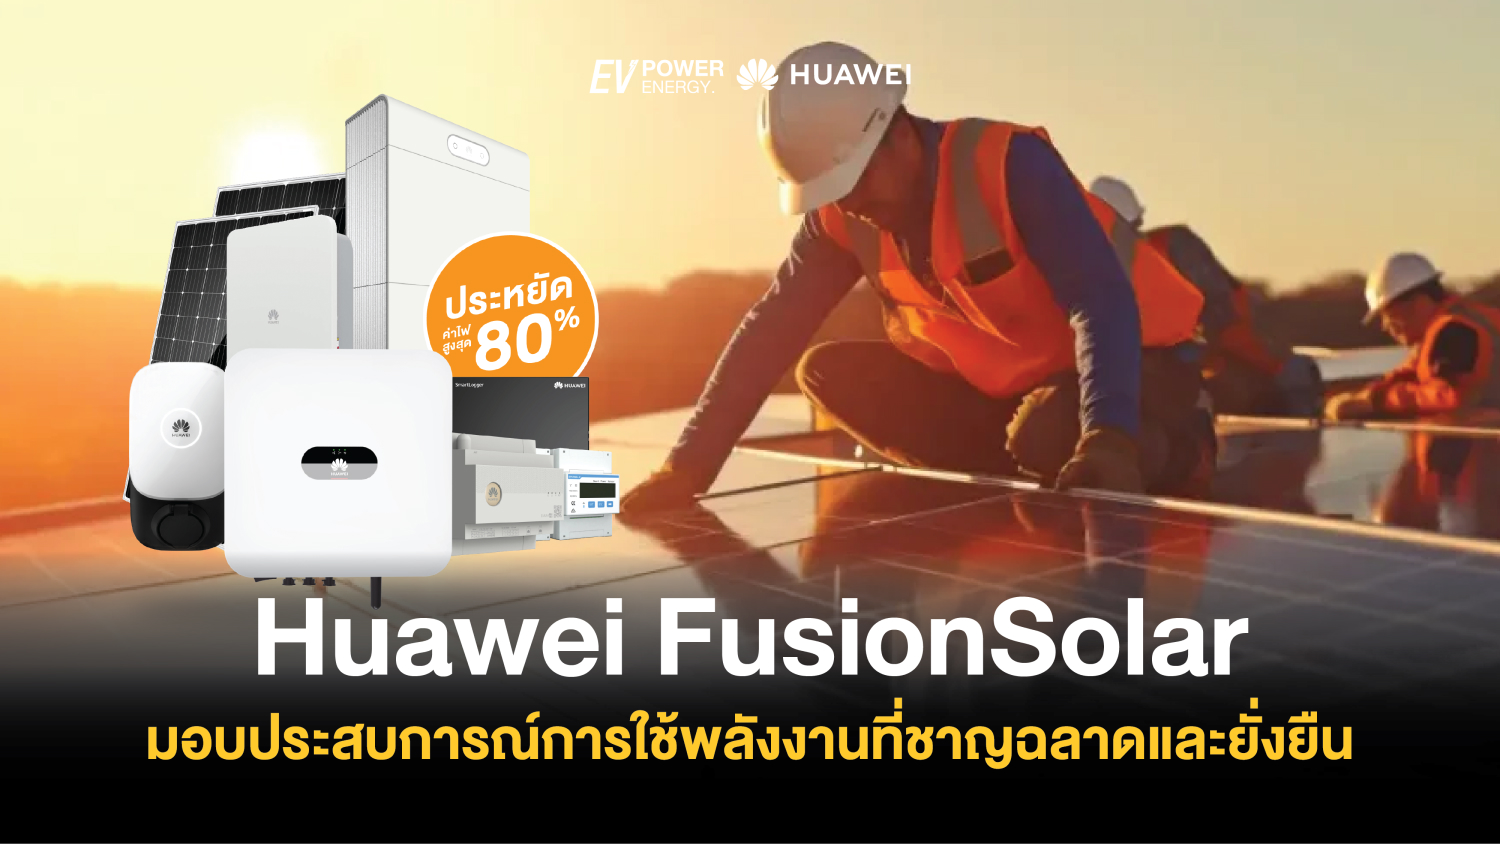 Huawei FusionSolar มอบประสบการณ์การใช้พลังงานที่ชาญฉลาดและยั่งยืน 1